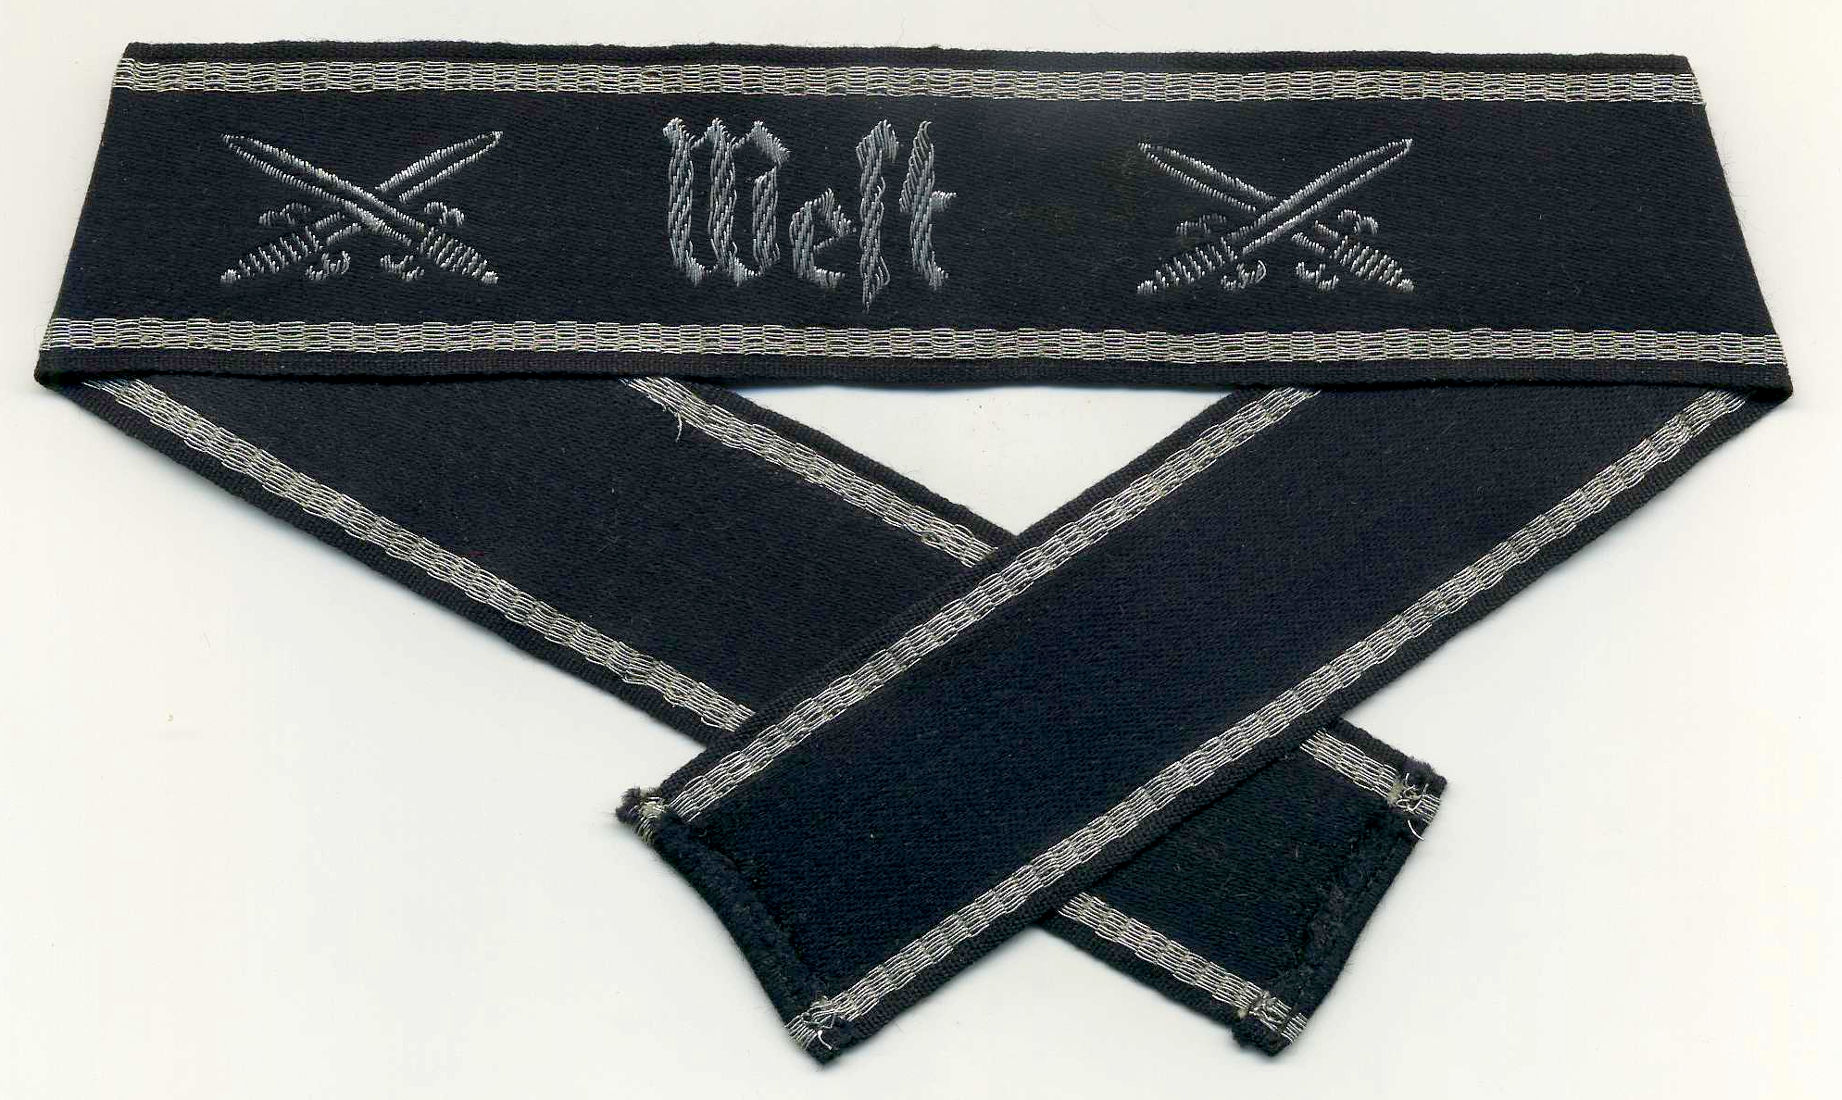 Нарукавная (манжетная) лента “West” ветеранской организации NSRKB (Nationalsozialistische-Reichskriegerbund).